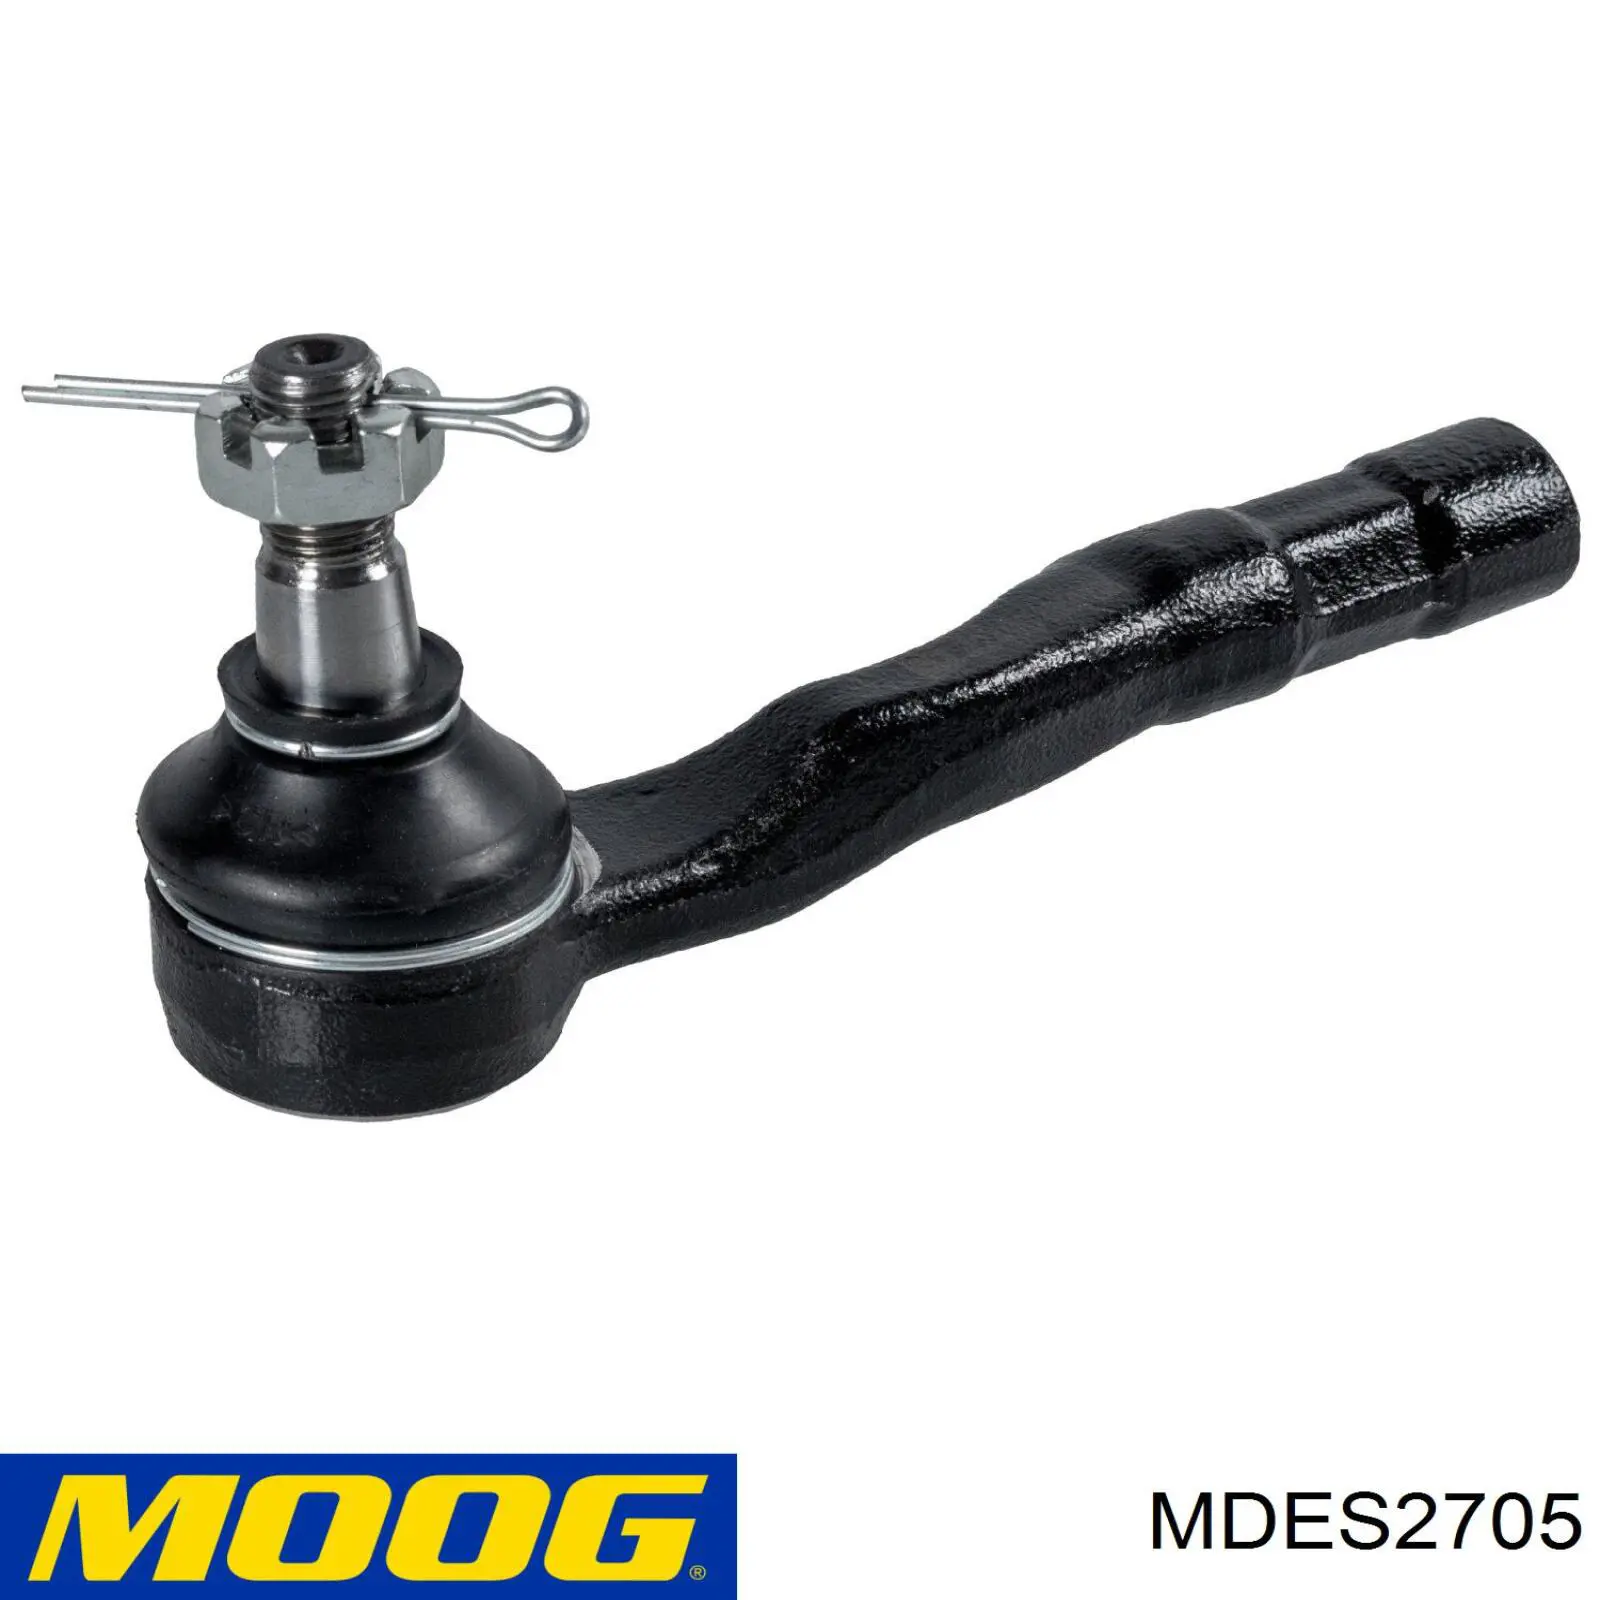 MDES2705 Moog rótula barra de acoplamiento exterior